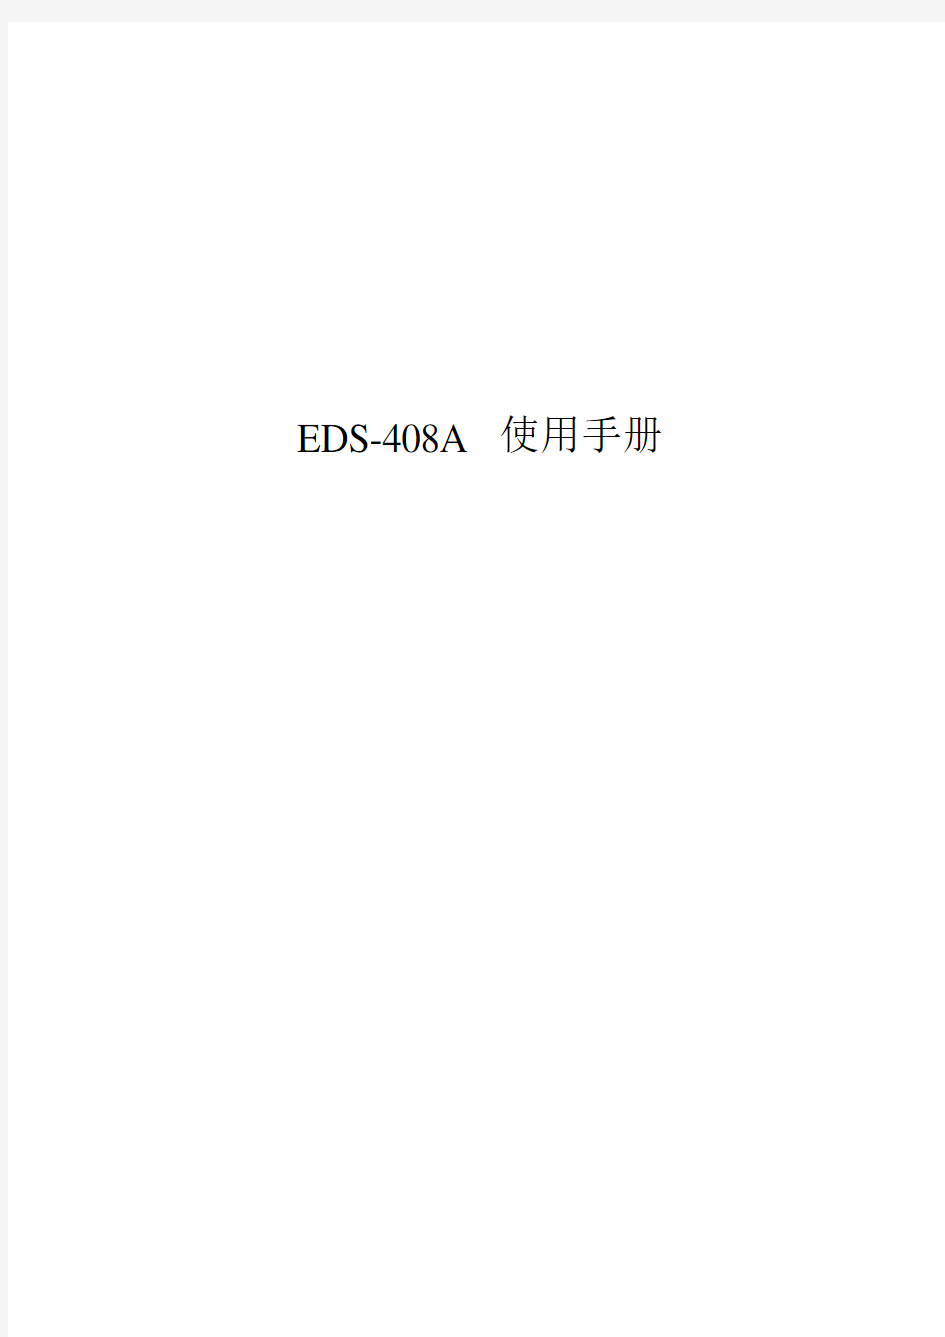 EDS-408A系列使用手册